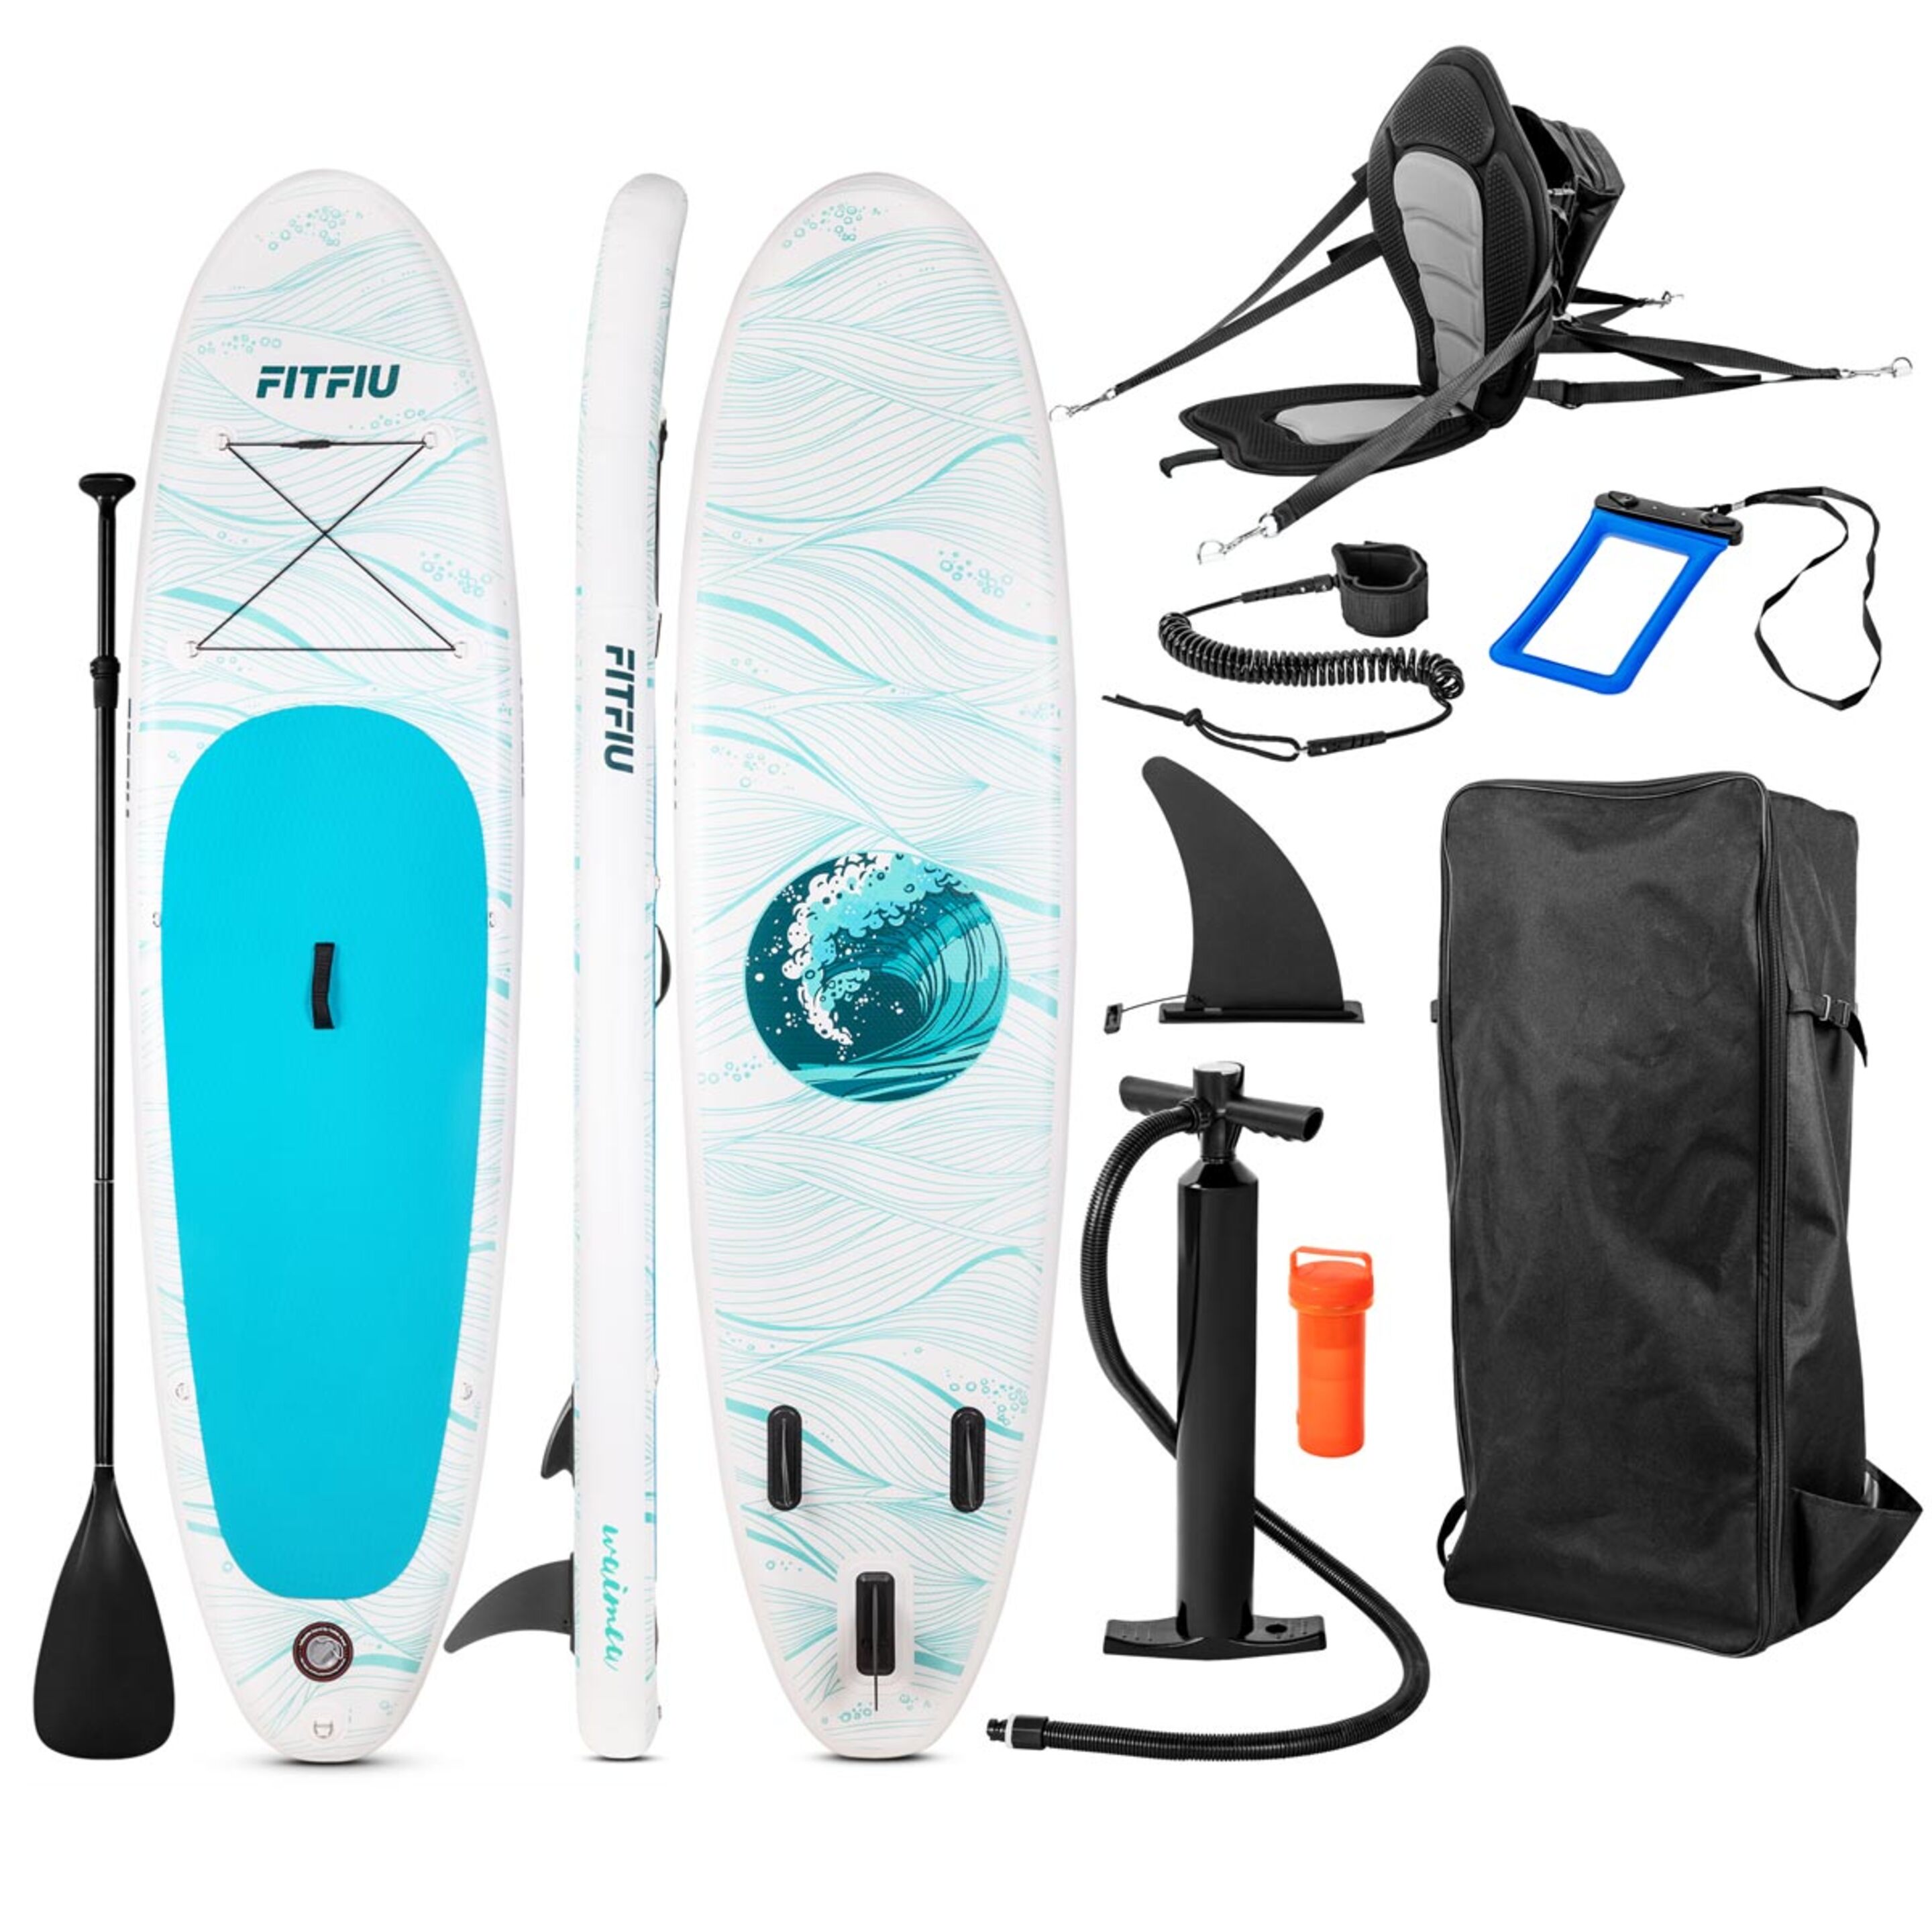 Tabla Paddle Surf All Round Hinchable Fitfiu Con Accesorios Y Diseño Marino - Azul Marino - Tabla SUP  MKP